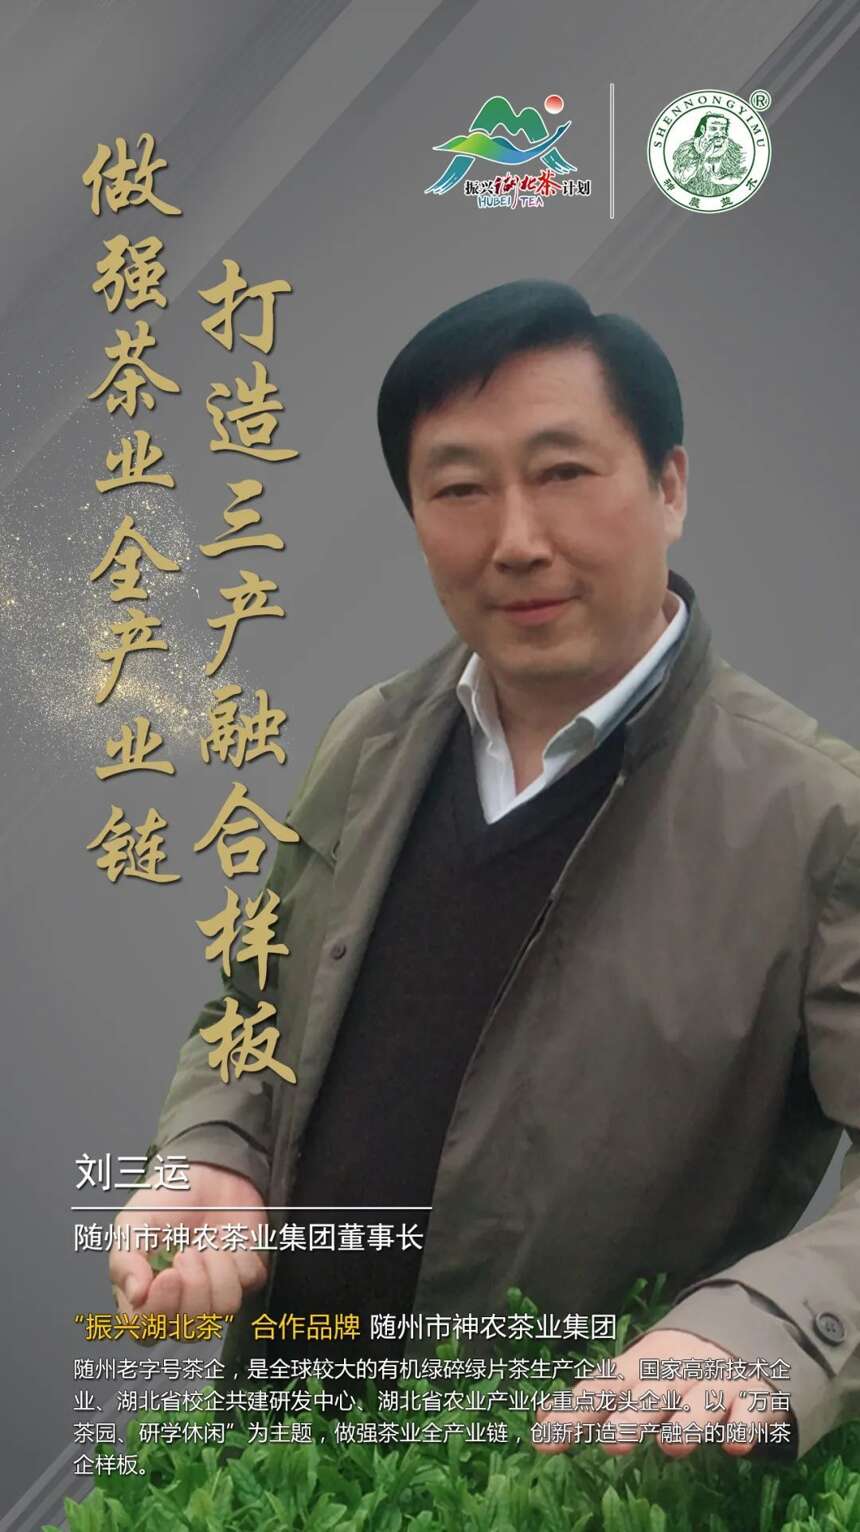 “振兴湖北茶”合作品牌巡礼 |随州市神农茶业集团